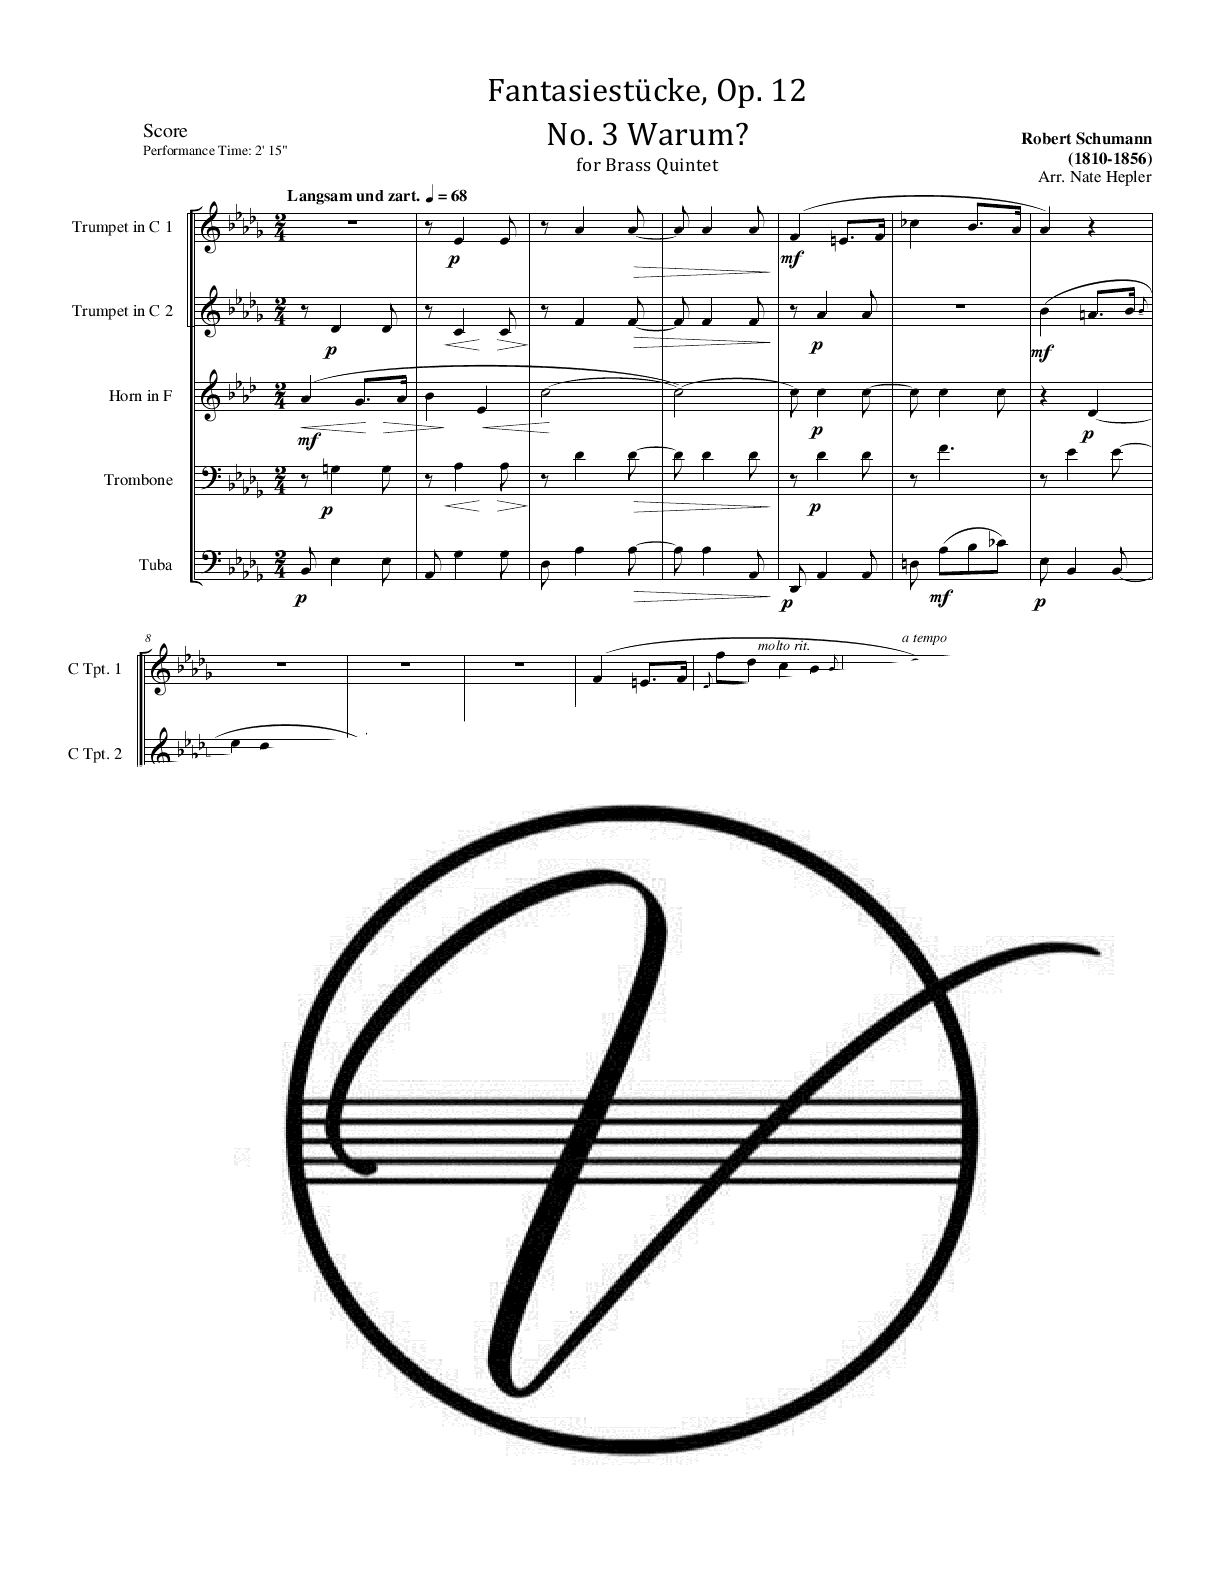 Schumann - Fantasiestucke, Op. 12, No. 3 - Warum? (BQ)